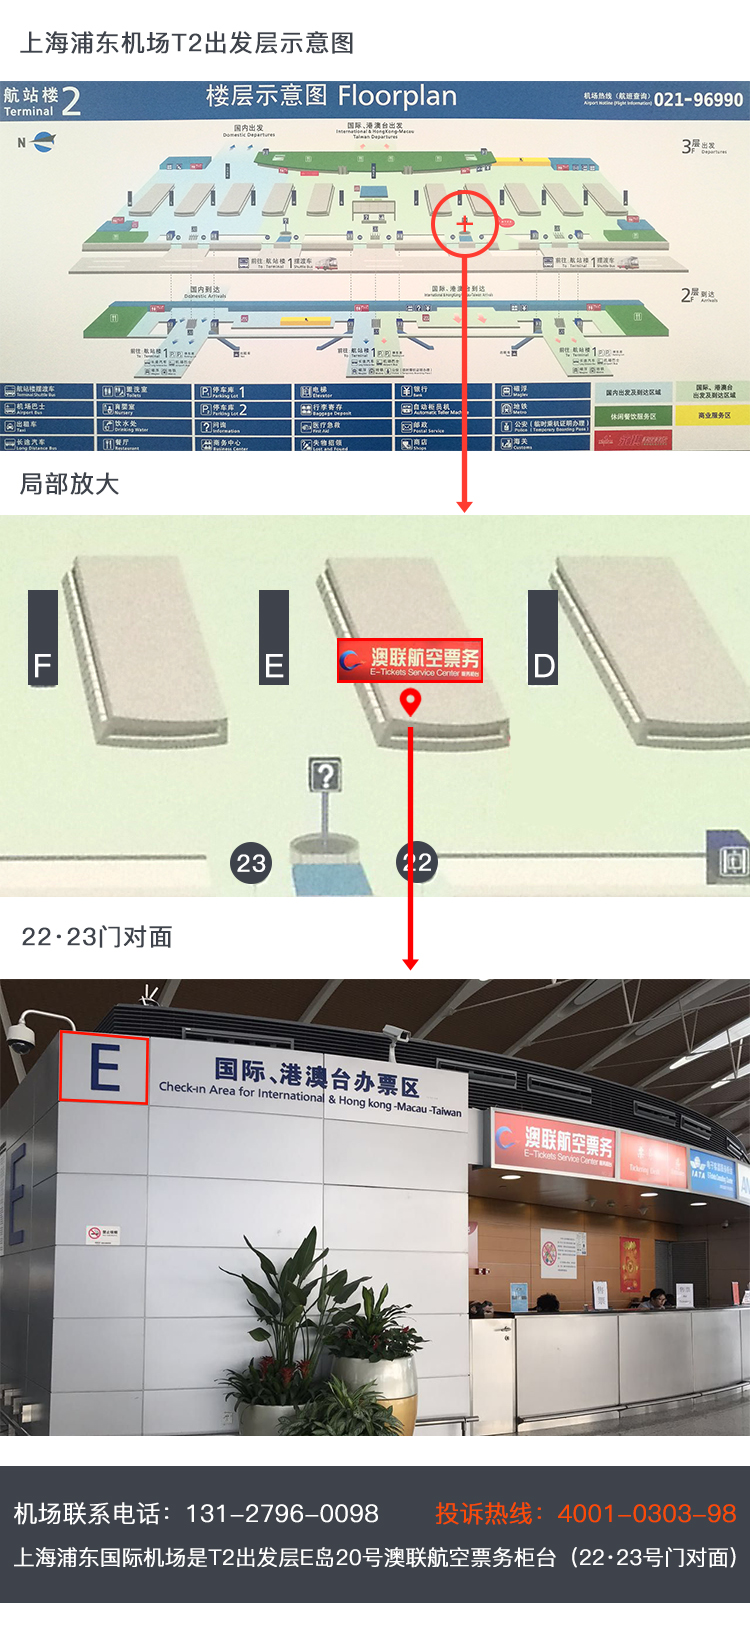 自取地址:上海浦东国际机场t2出发层e岛20号柜台澳联航空票务(23号门